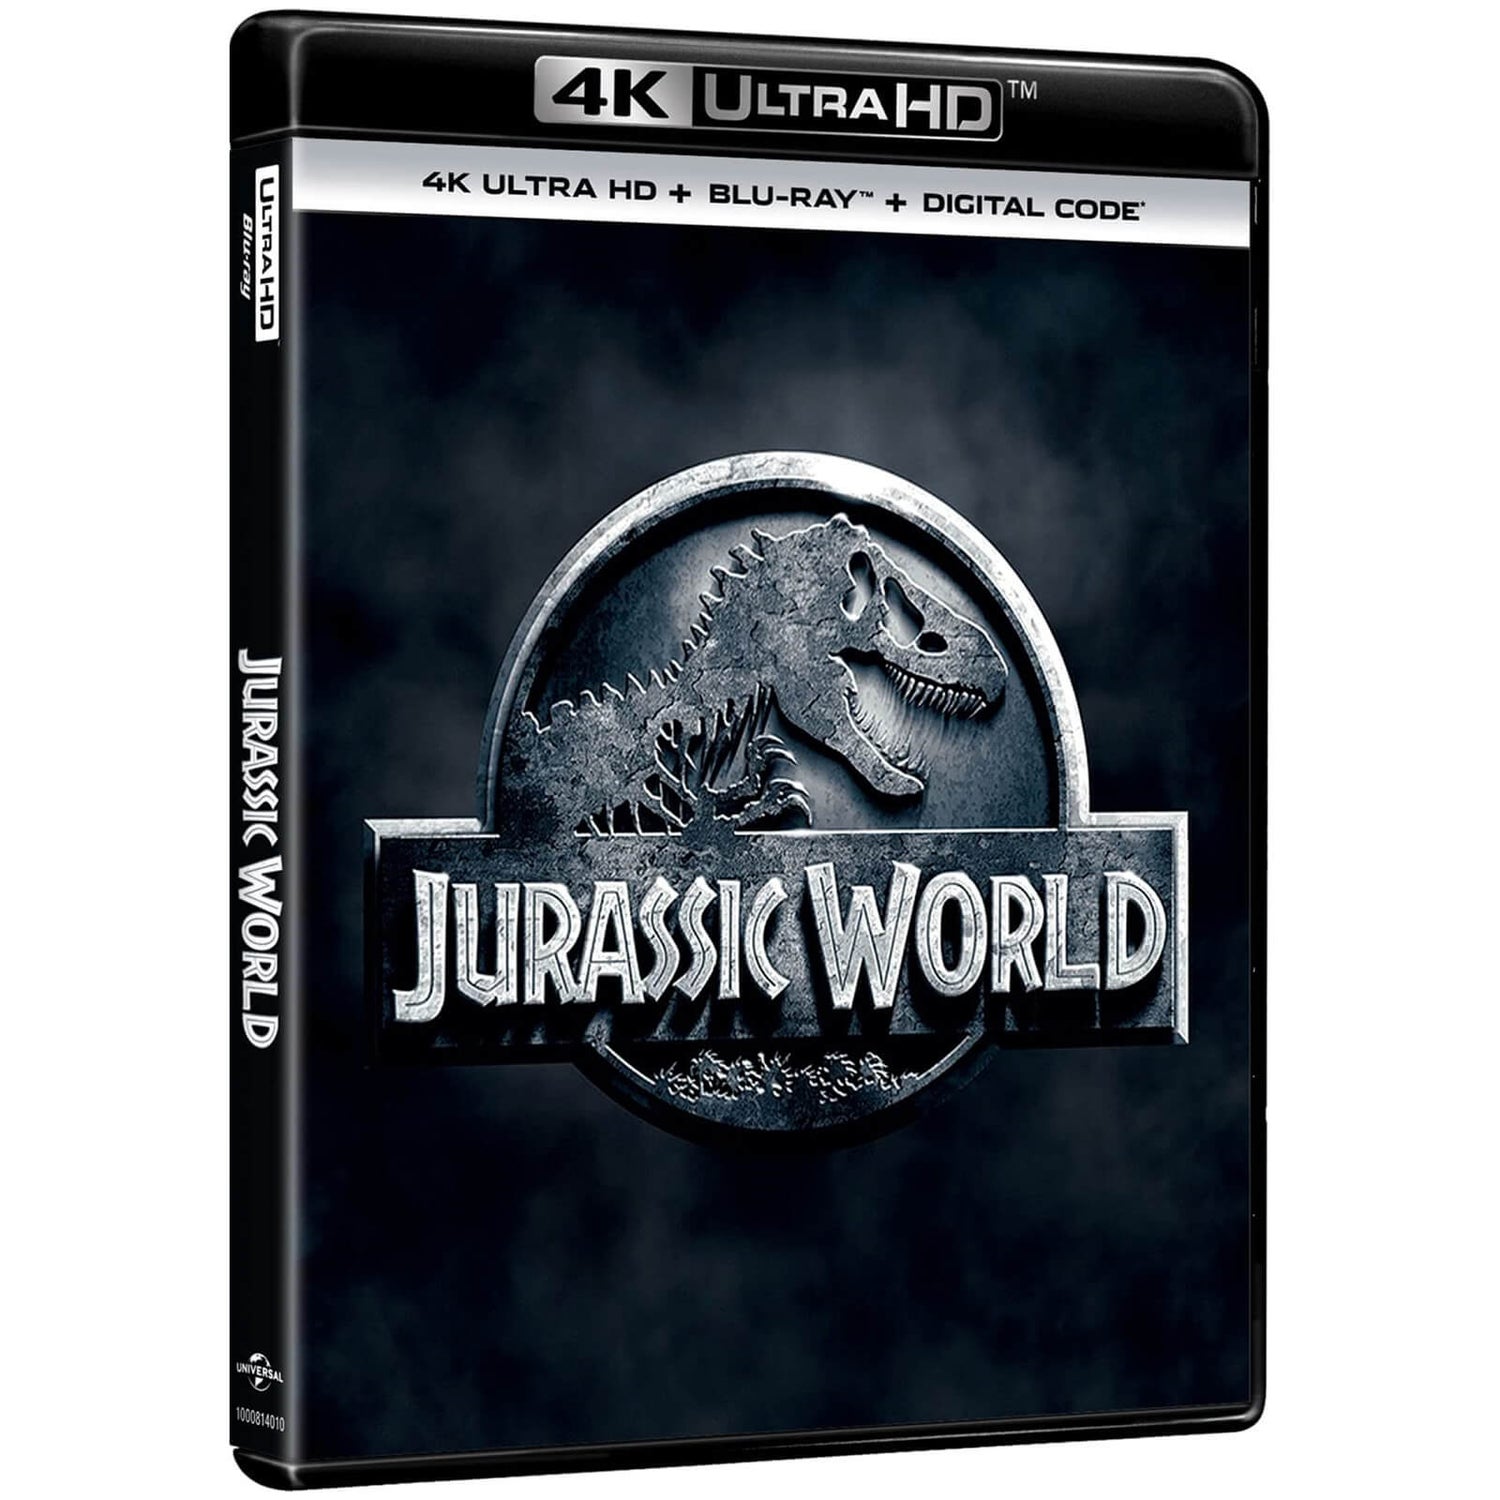 Jurassic World - 4K Ultra HD (Includes Blu-ray) Blu-ray - Zavvi US